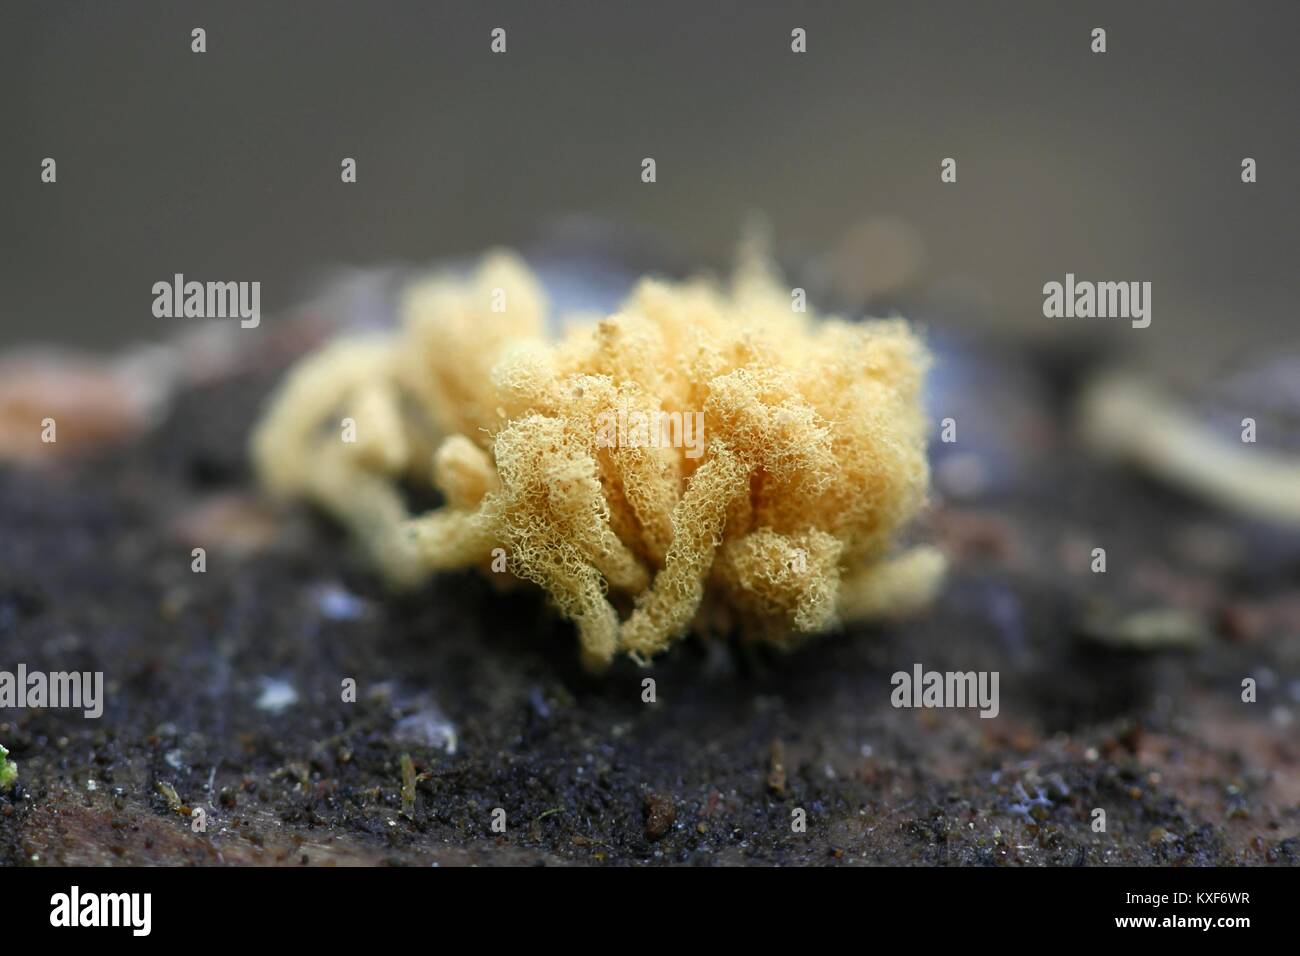 Yellow slime mold, Arcyria obvelata Stock Photo